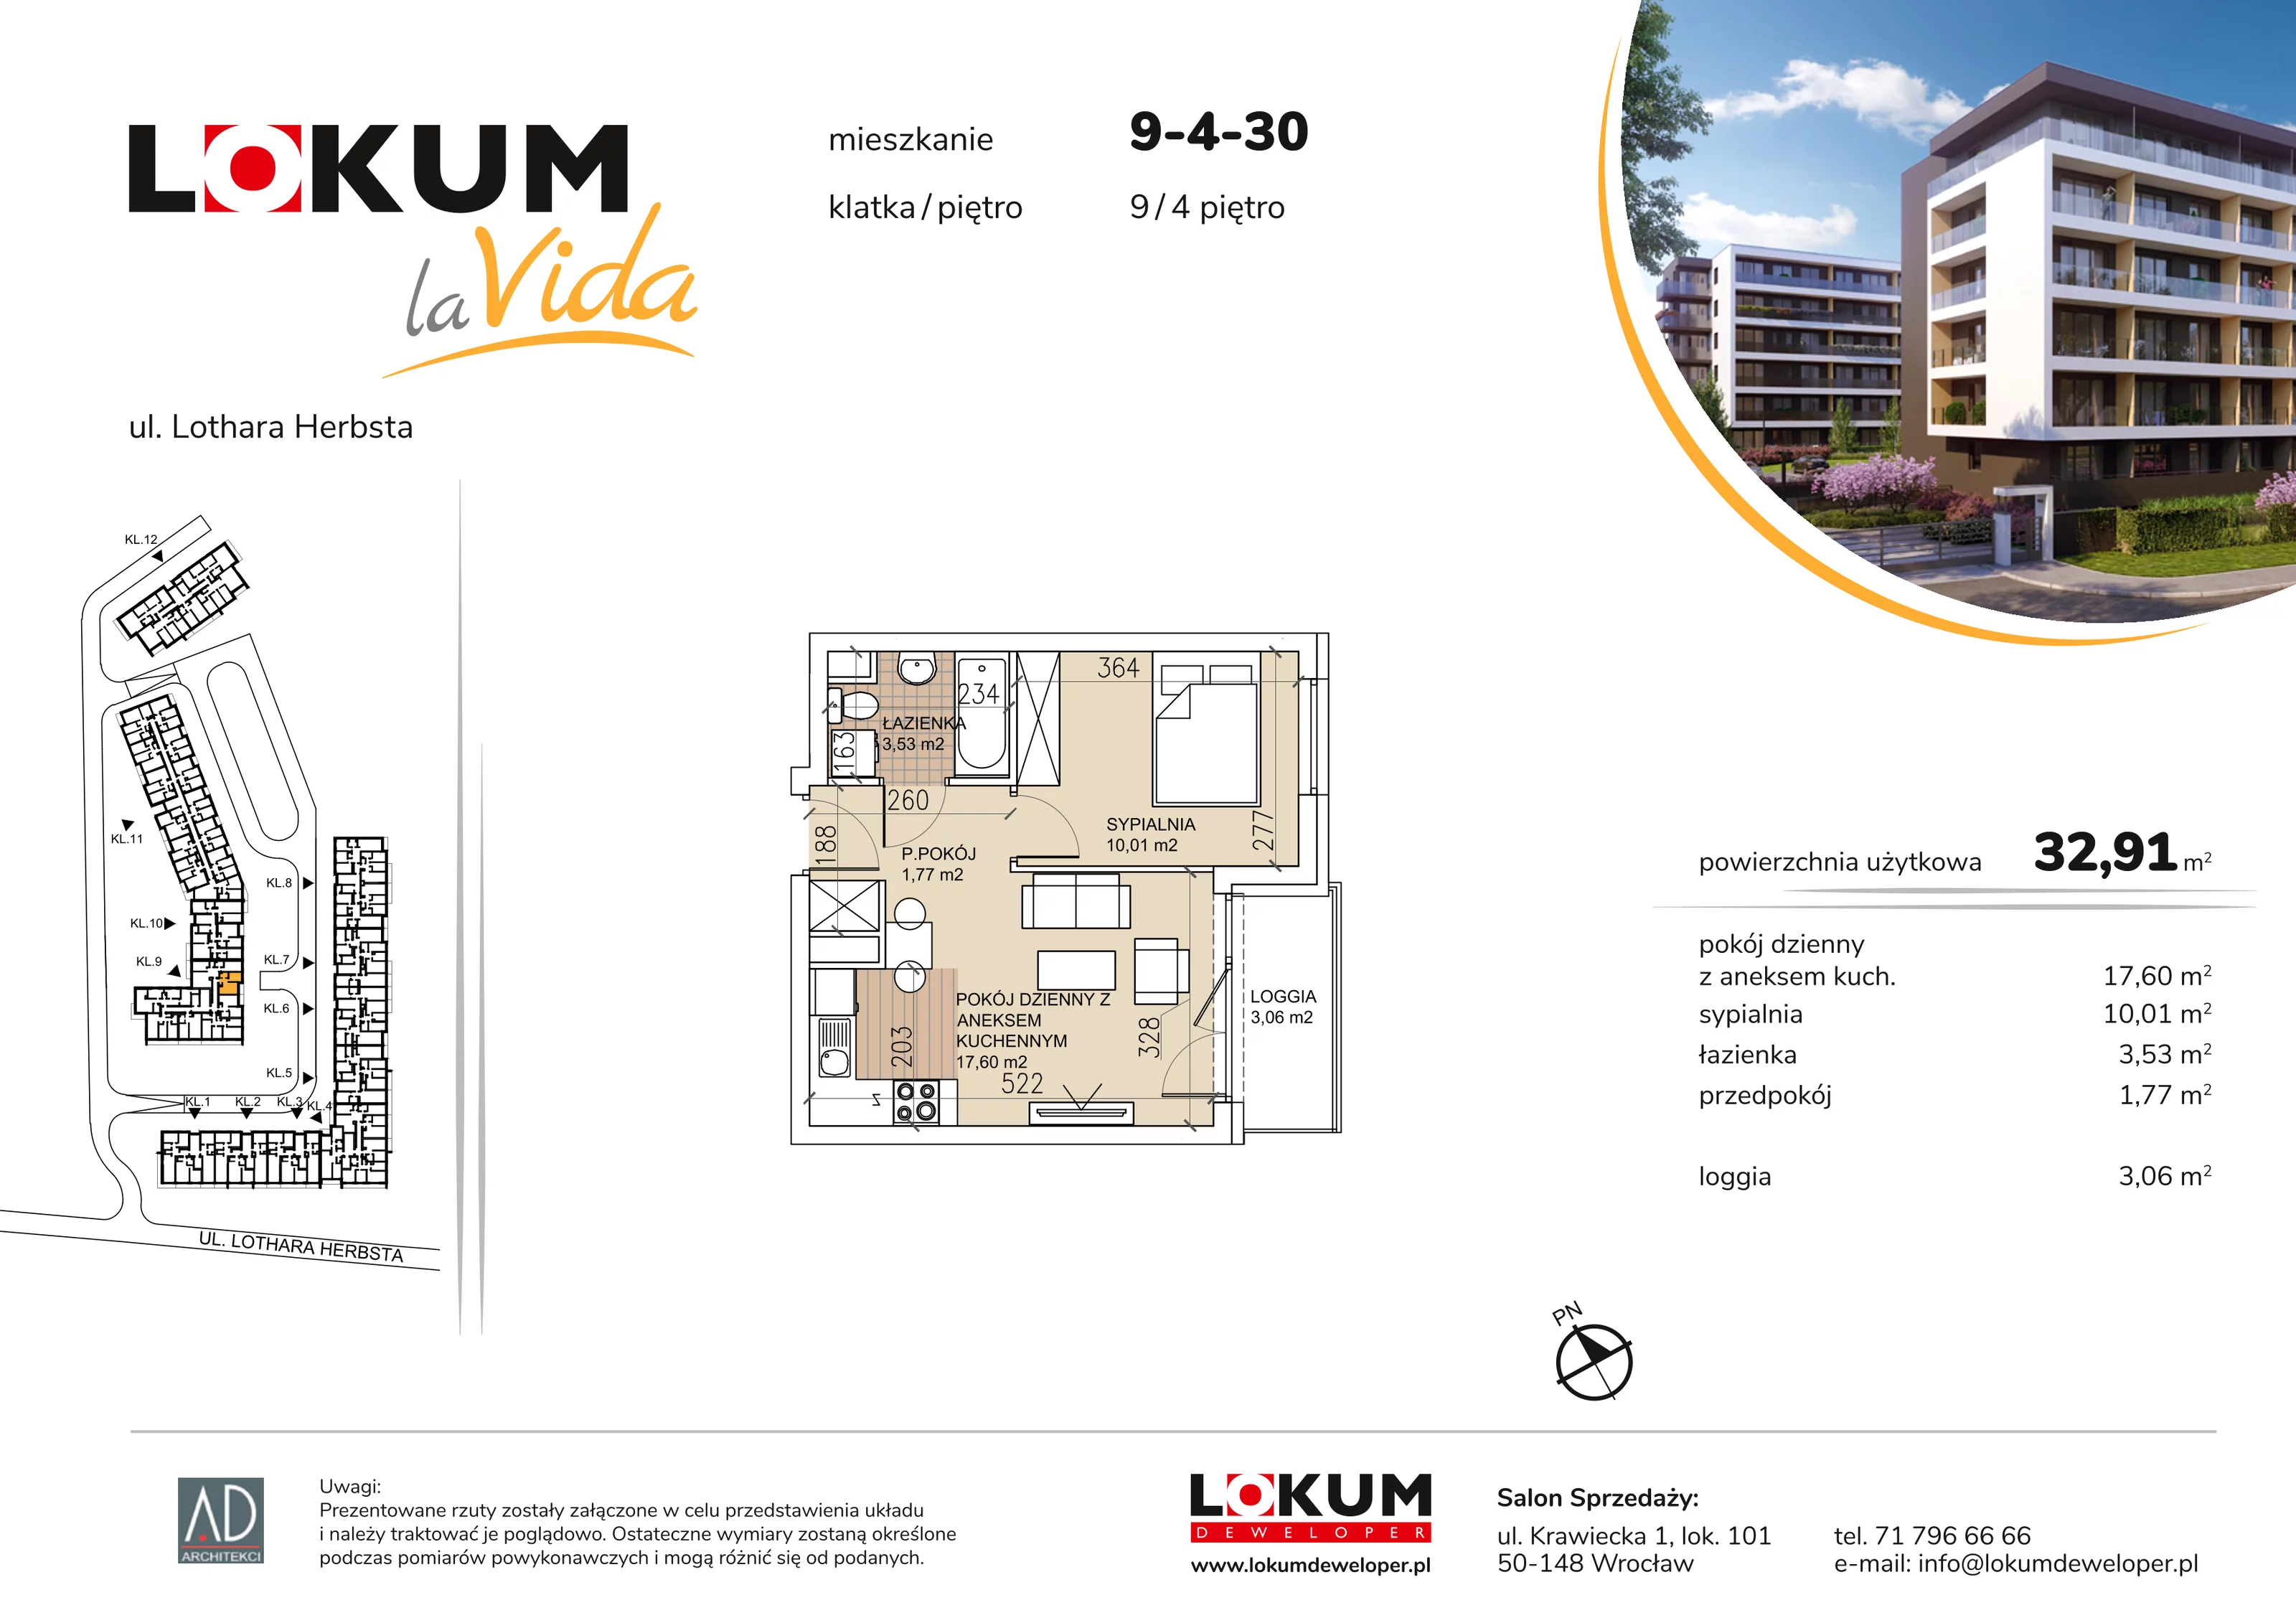 Mieszkanie 32,91 m², piętro 4, oferta nr 9-4-30, Lokum la Vida, Wrocław, Sołtysowice, ul. Lothara Herbsta